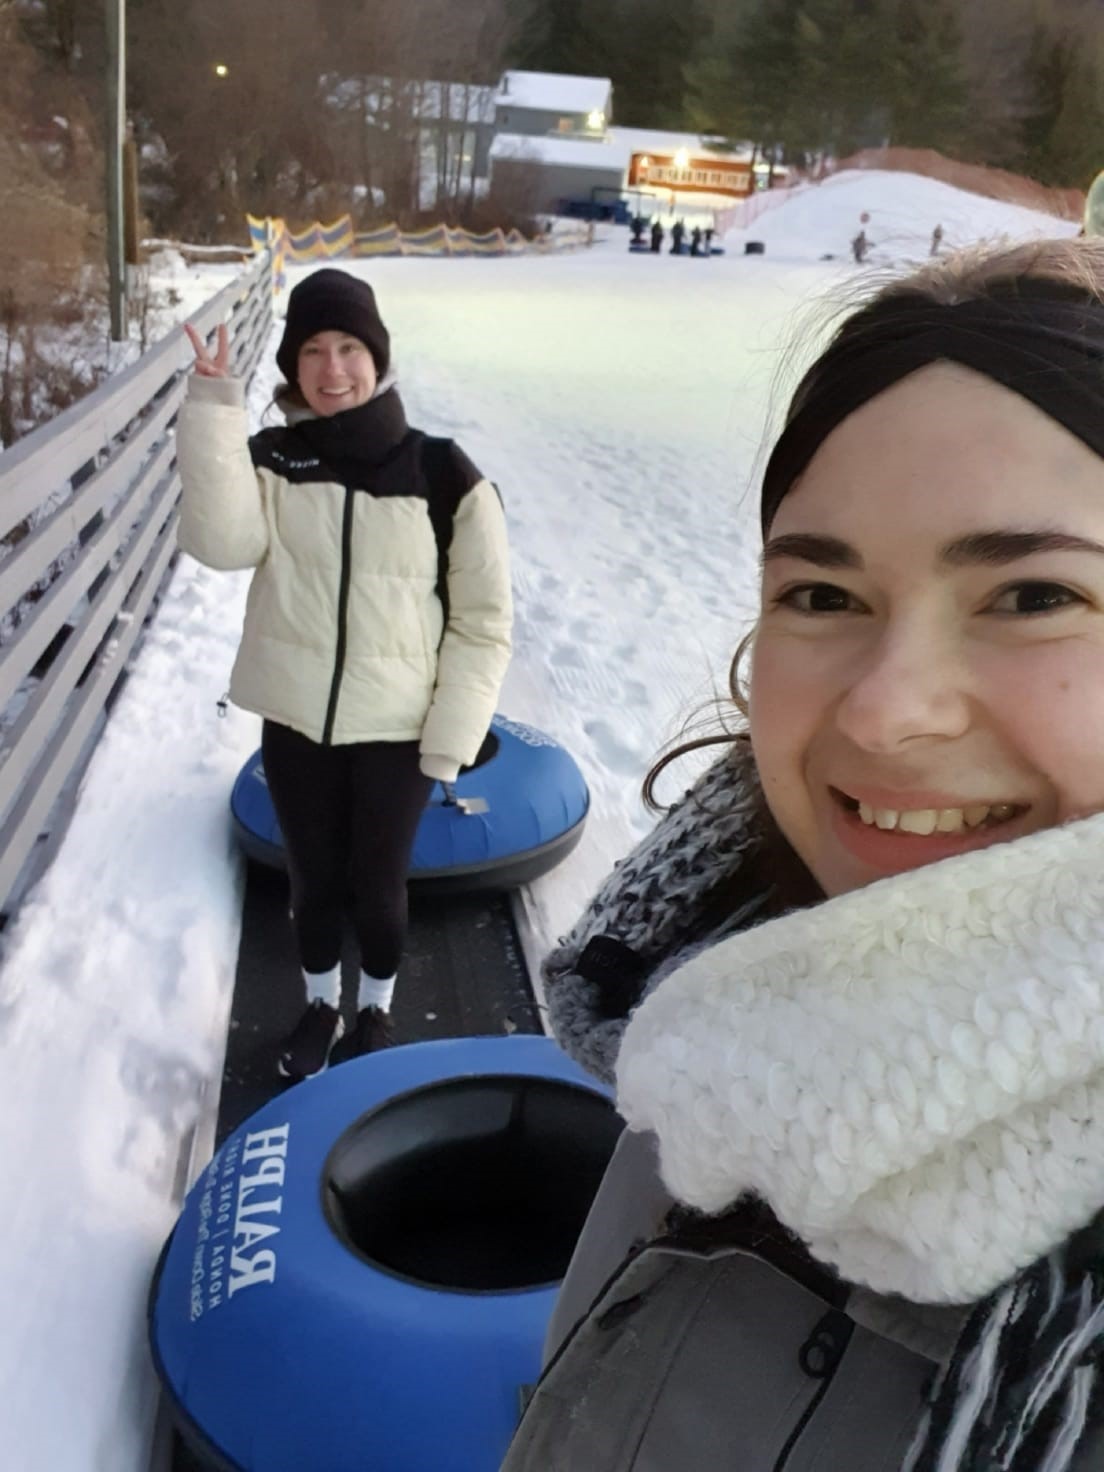 Foto: Eva und Luisa beim Snowtubing, Rodeln mit einem Gummireifen